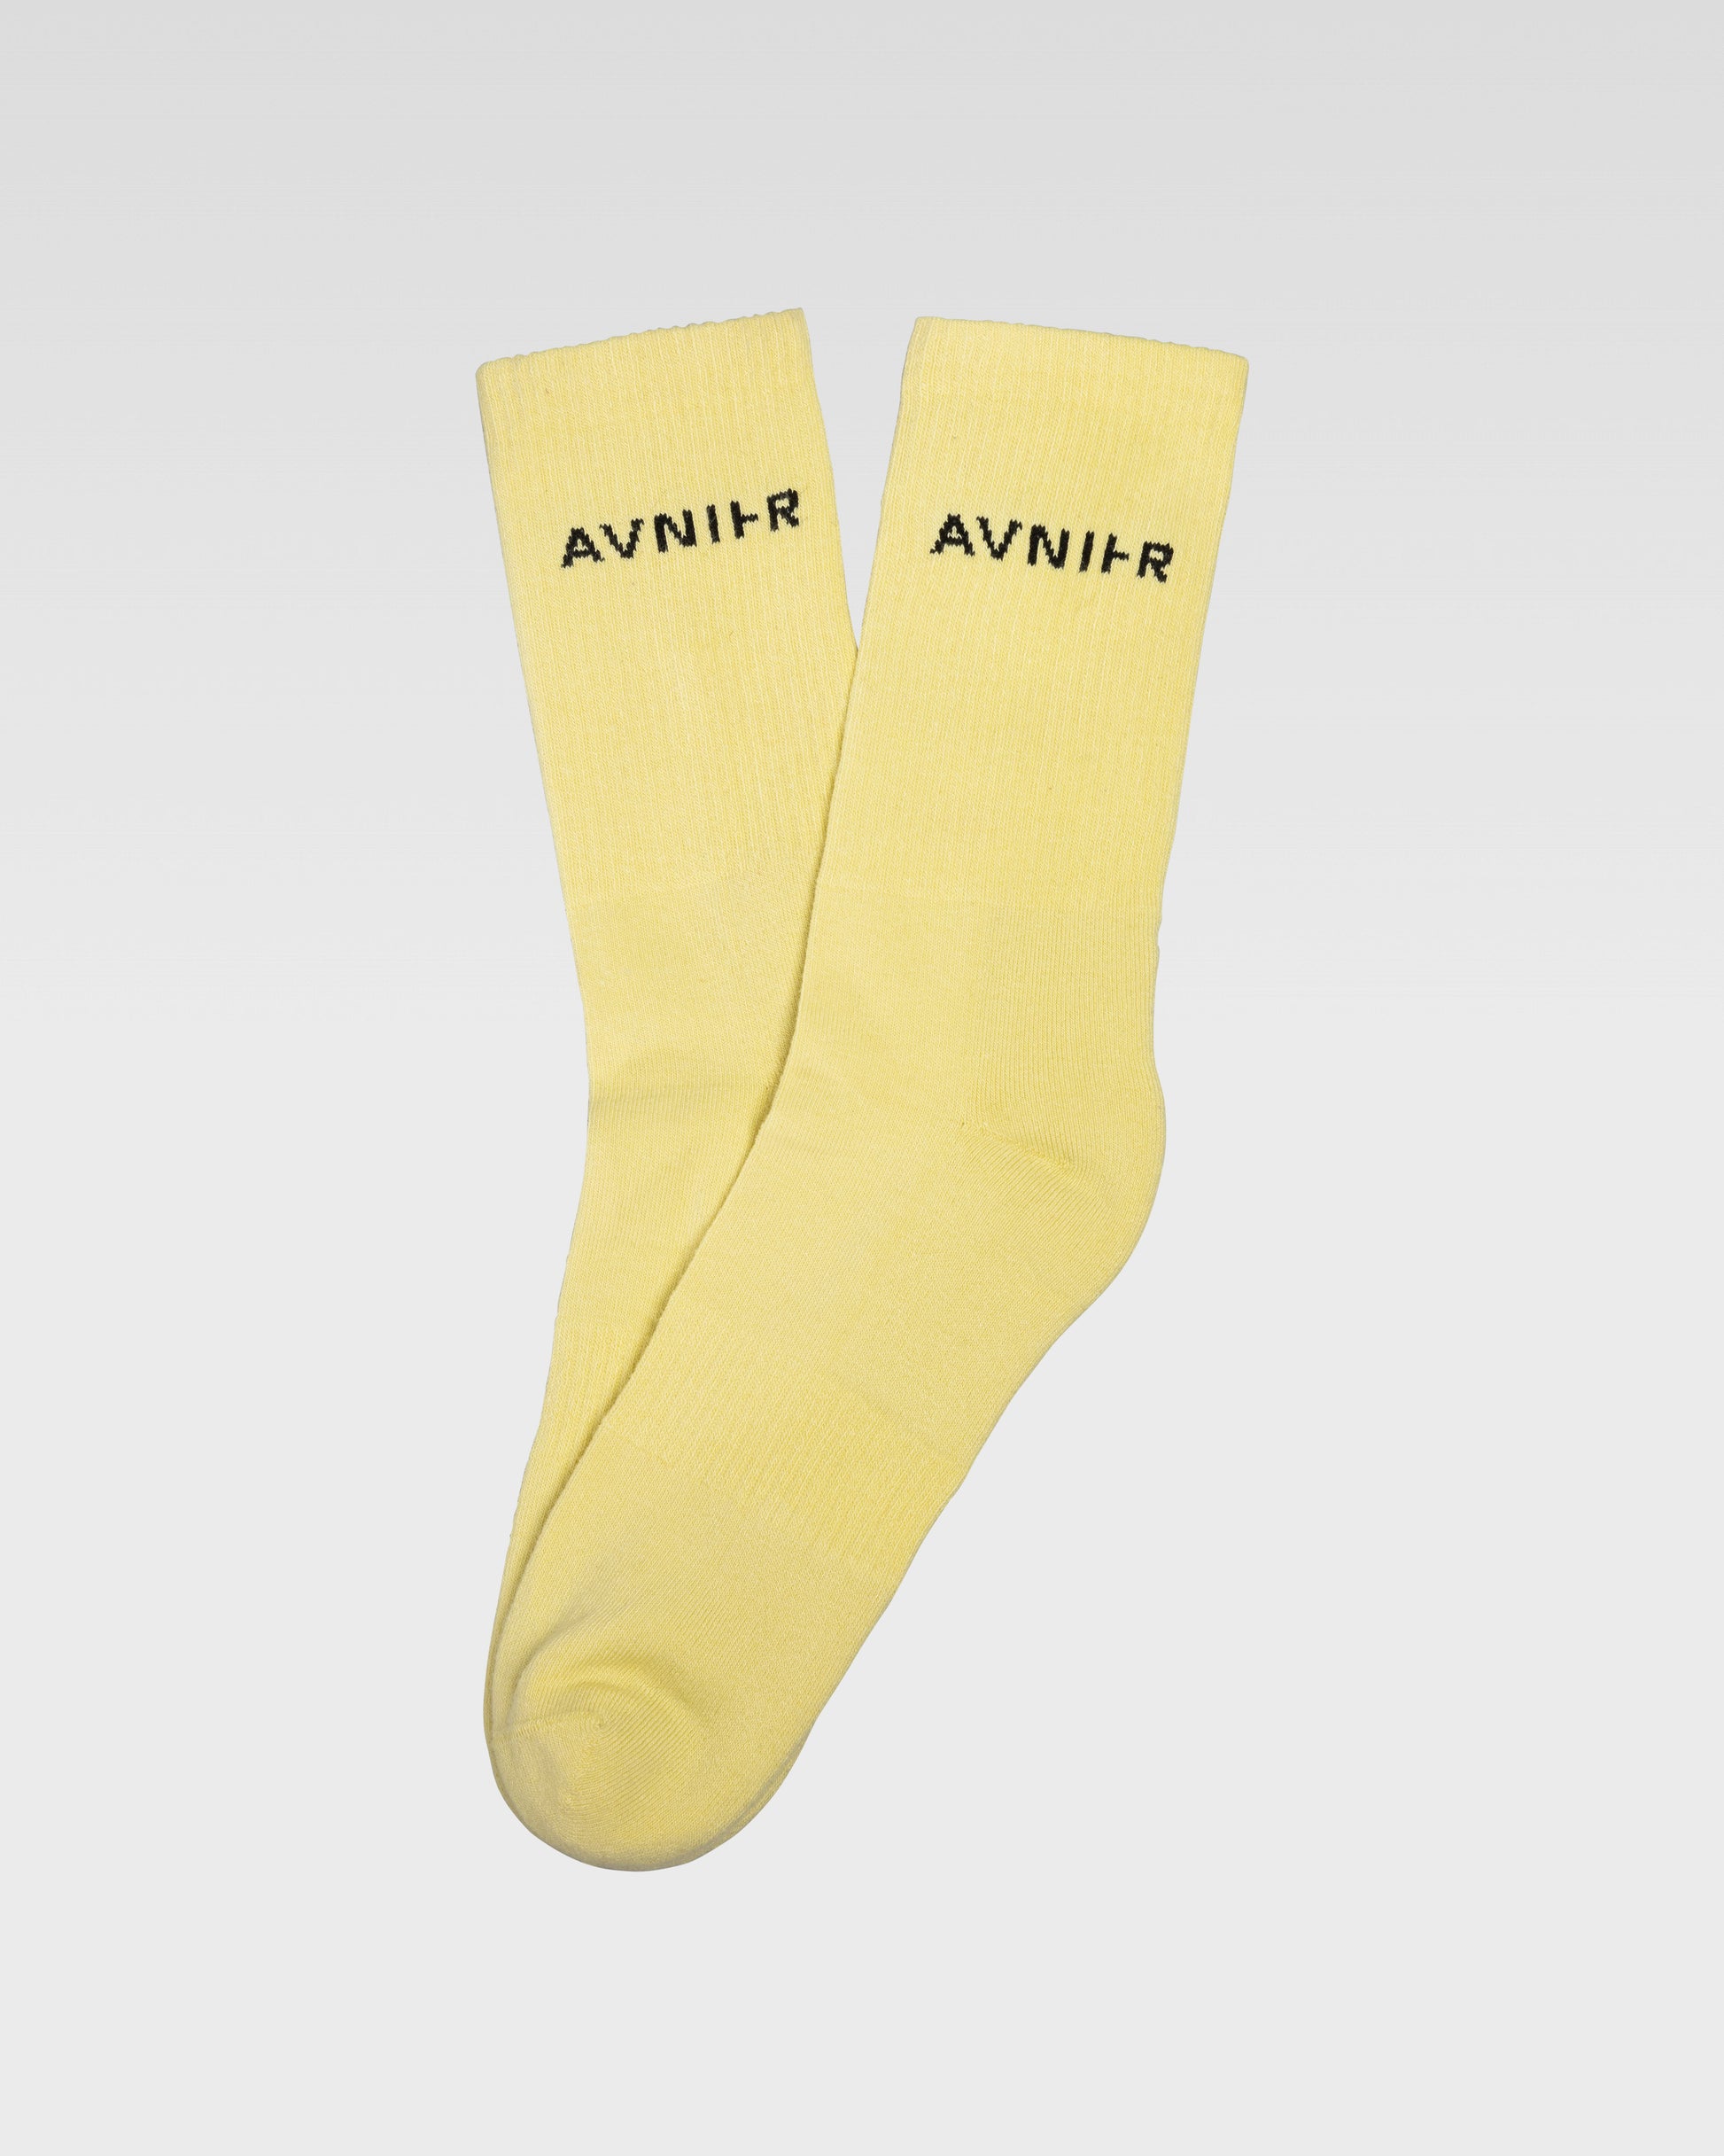 socks-loop-horizontal-jaune-pale-avnier-avnir-3-packshot-dos - jaune pâle